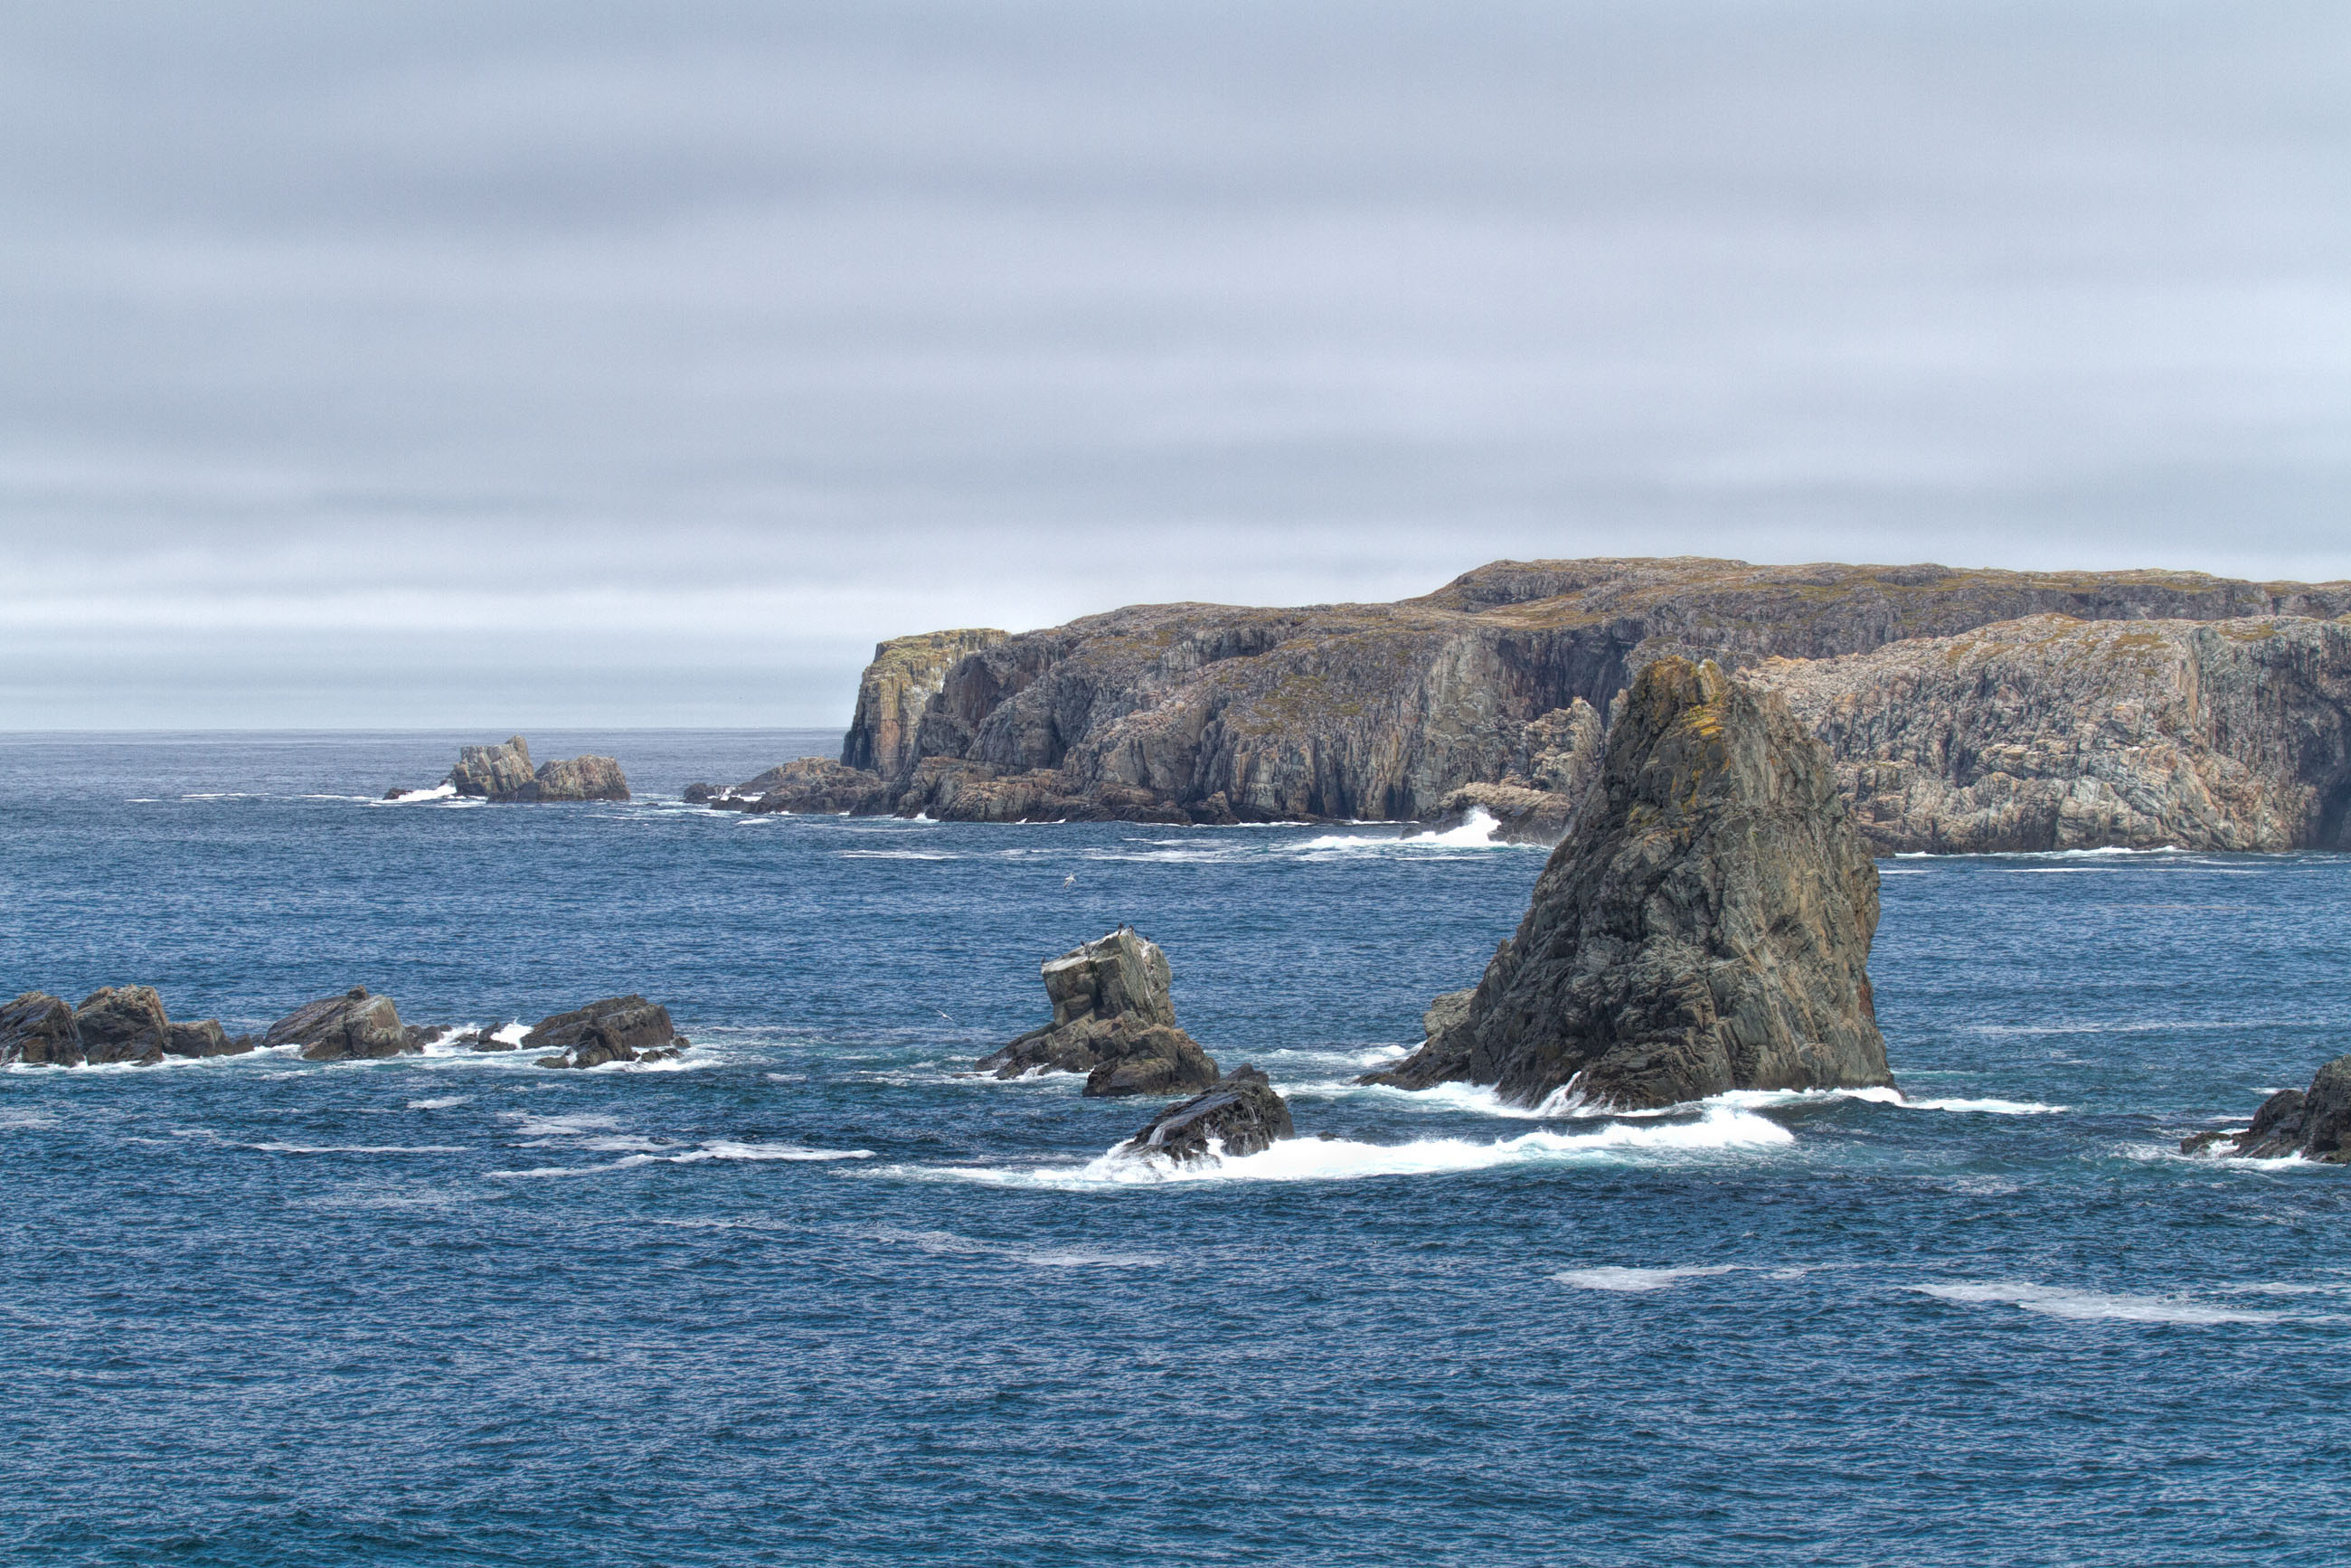 Atlantic Canada Coastline, Atlanticocean, Sea, Remote, Rock, HQ Photo